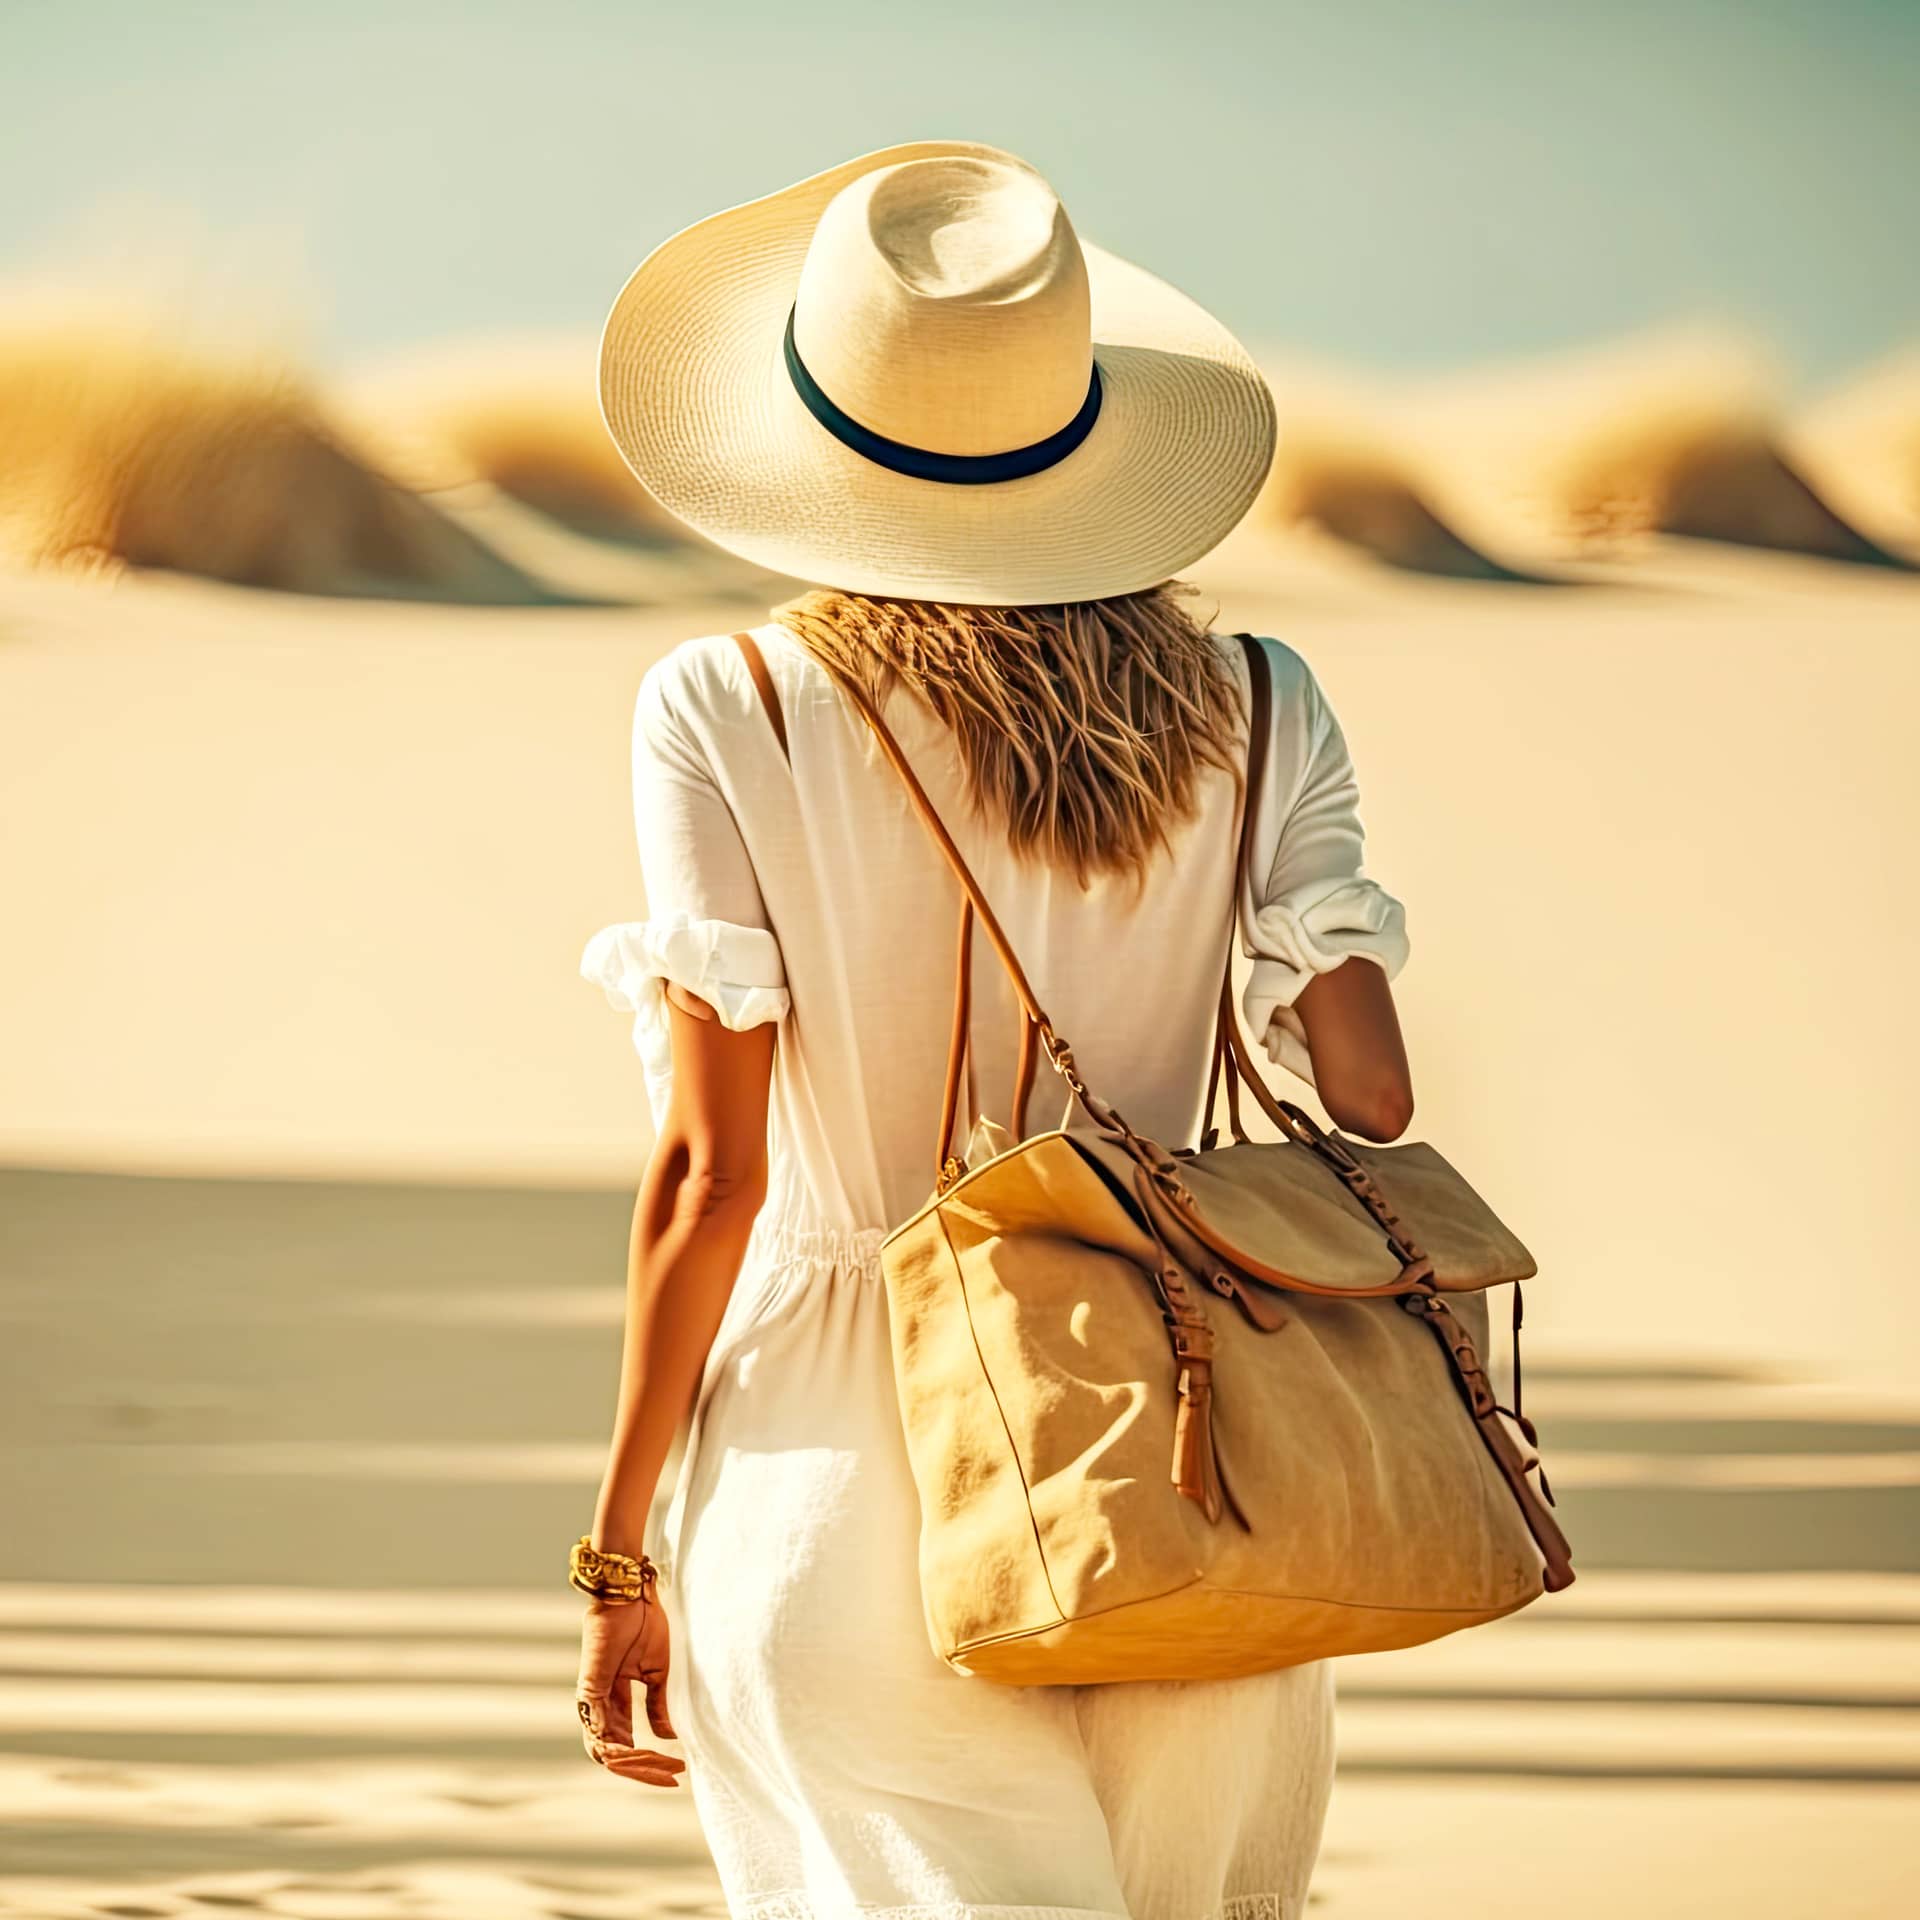 Hat light dress with beach women handbag walking along coast